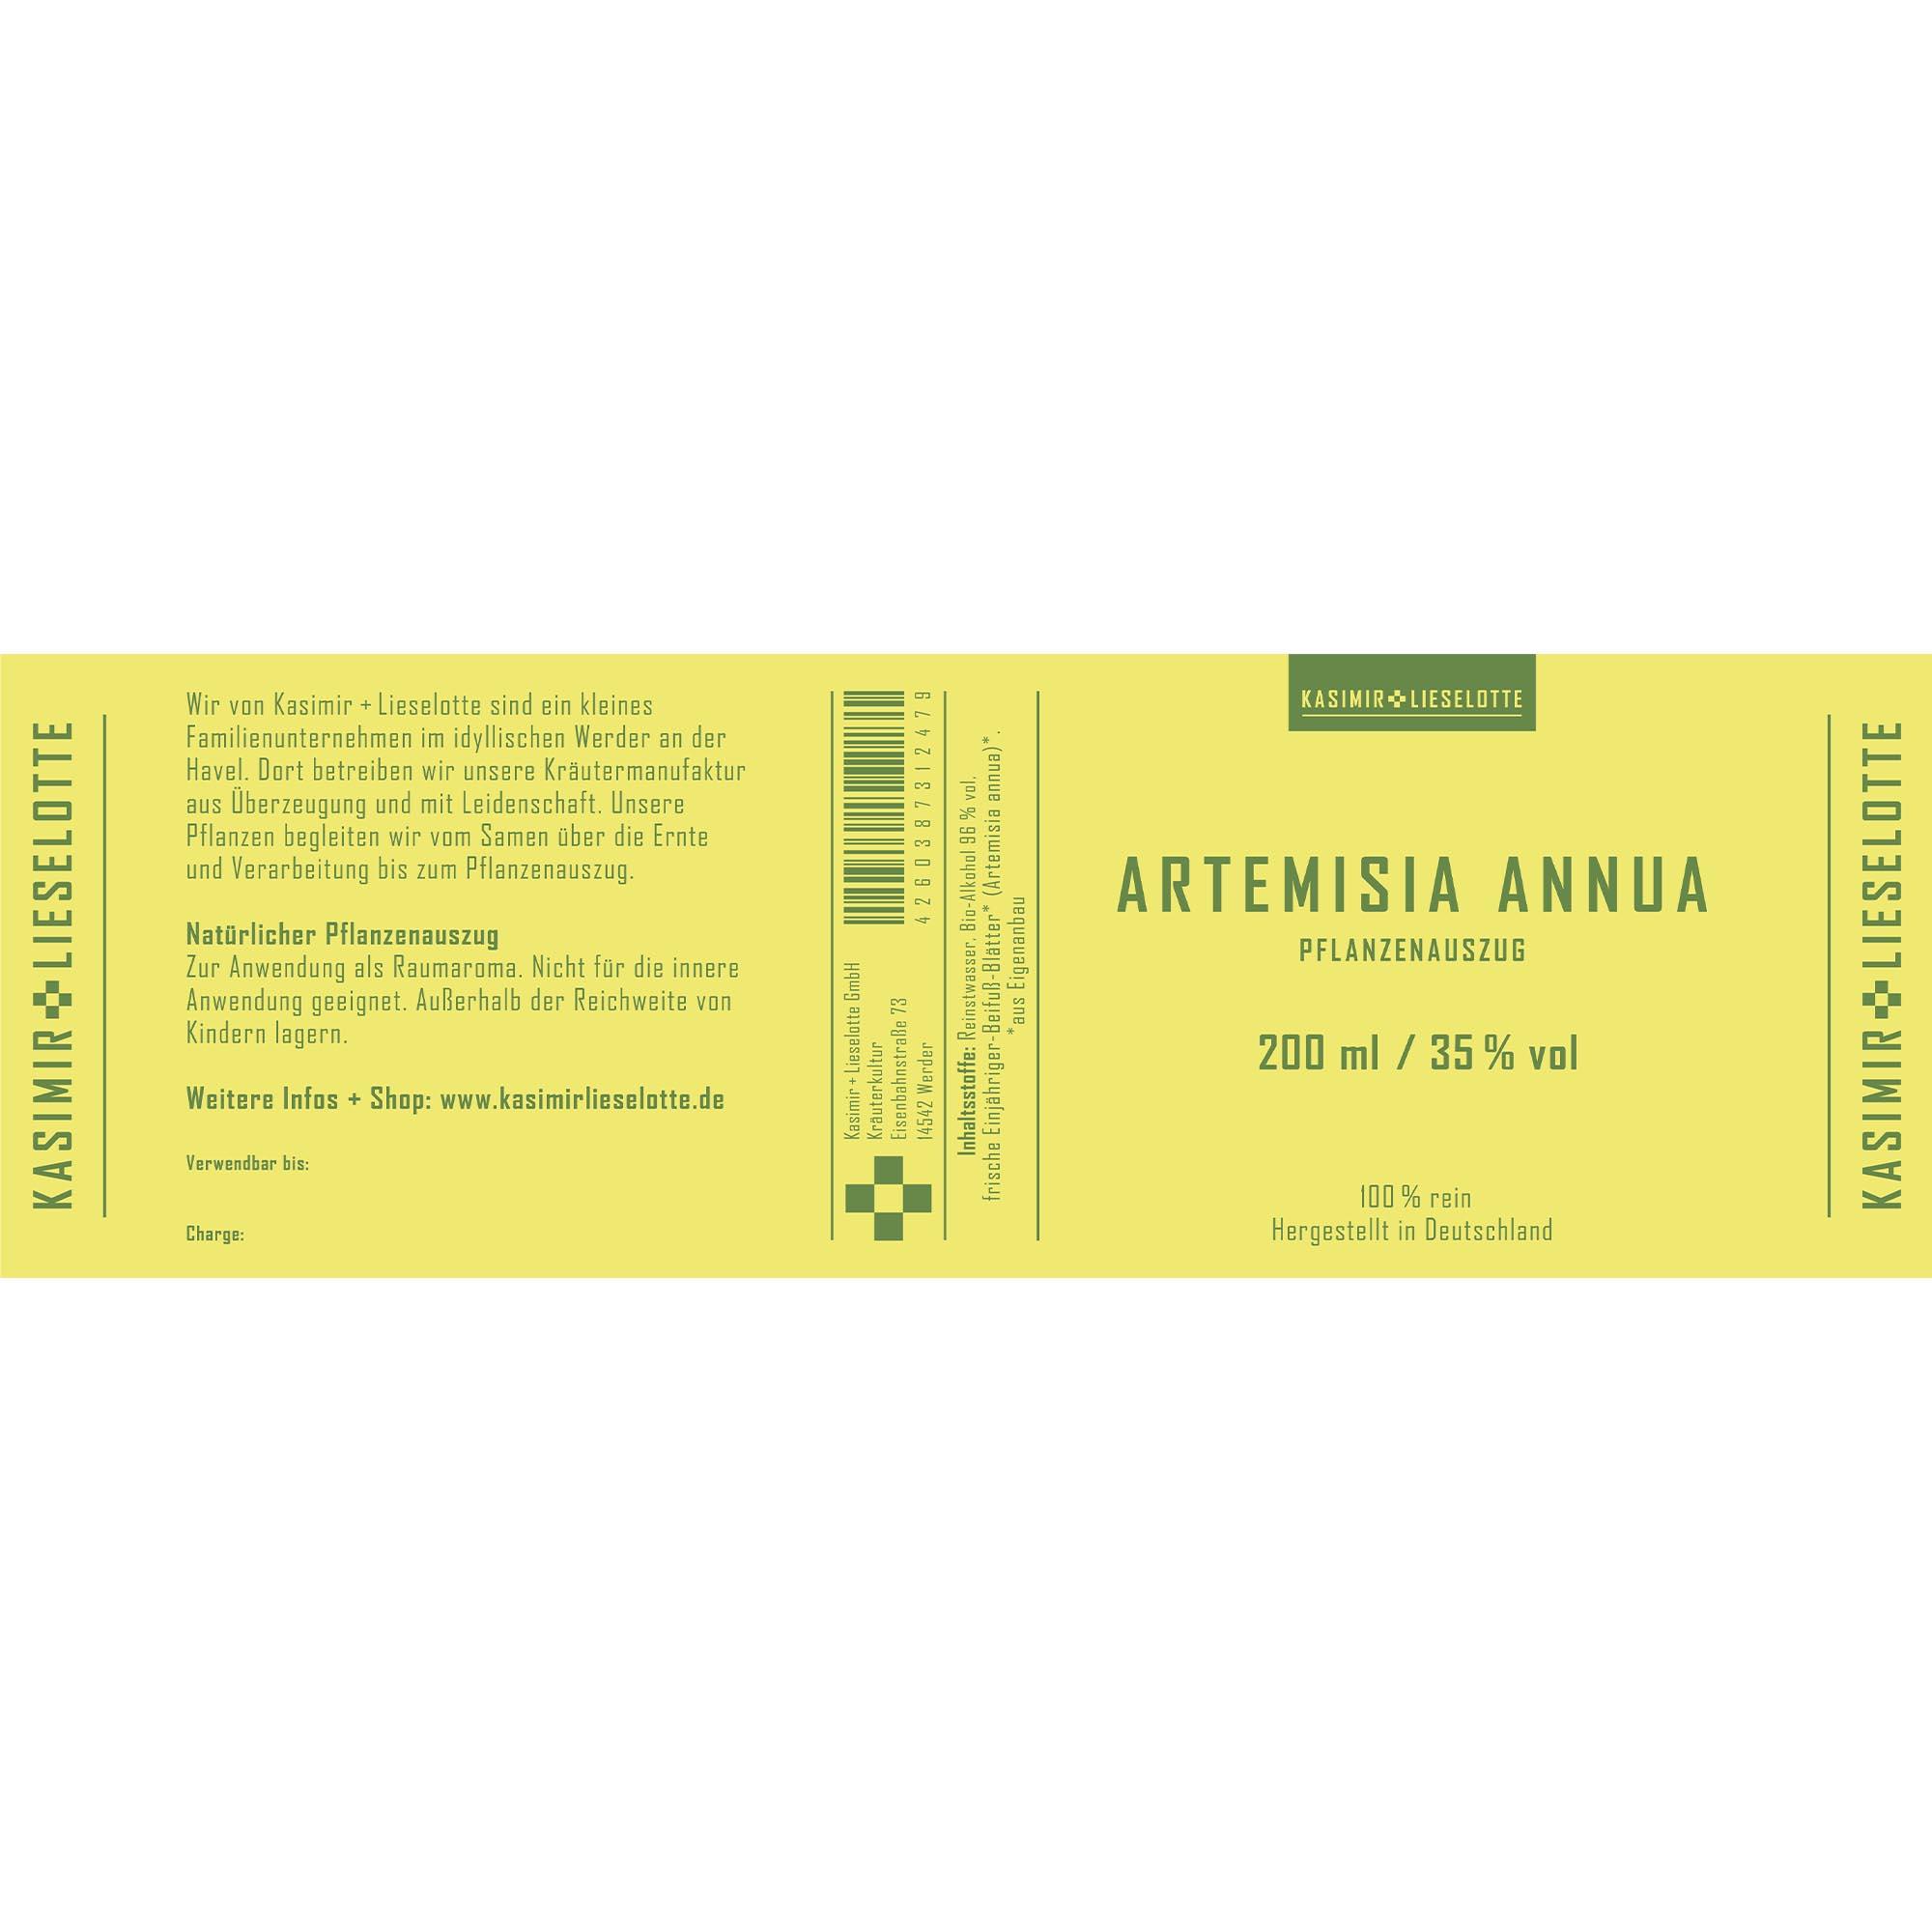 Artemisia annua Pflanzenauszug - Auswahl: 200 ml